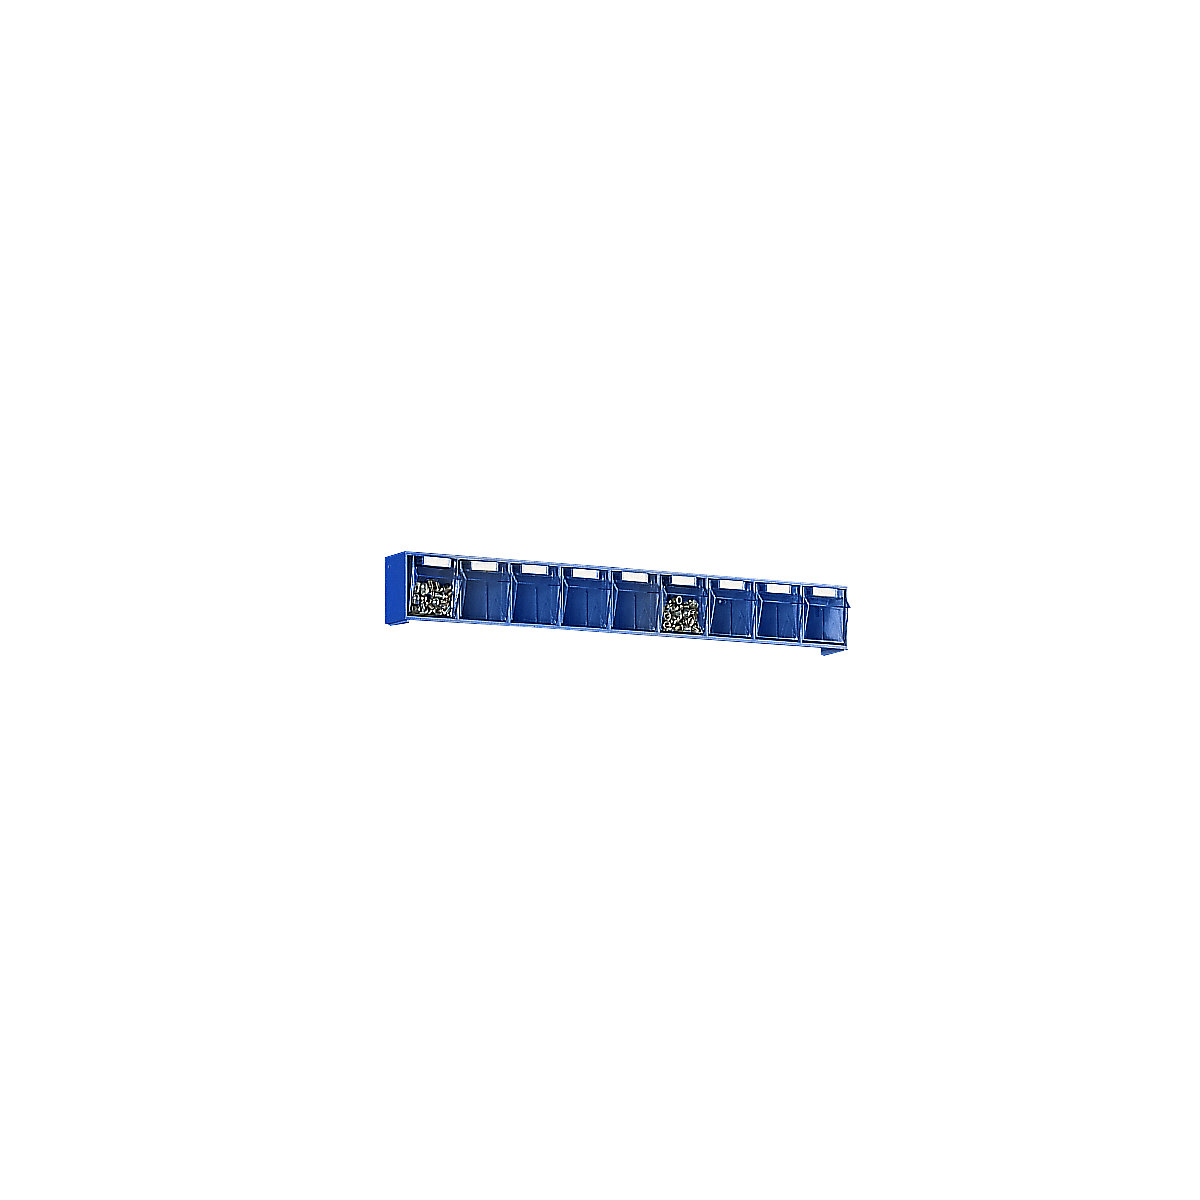 Sistema de caixas articuladas, AxLxP do corpo 77 x 600 x 62 mm, 9 caixas, azul-7